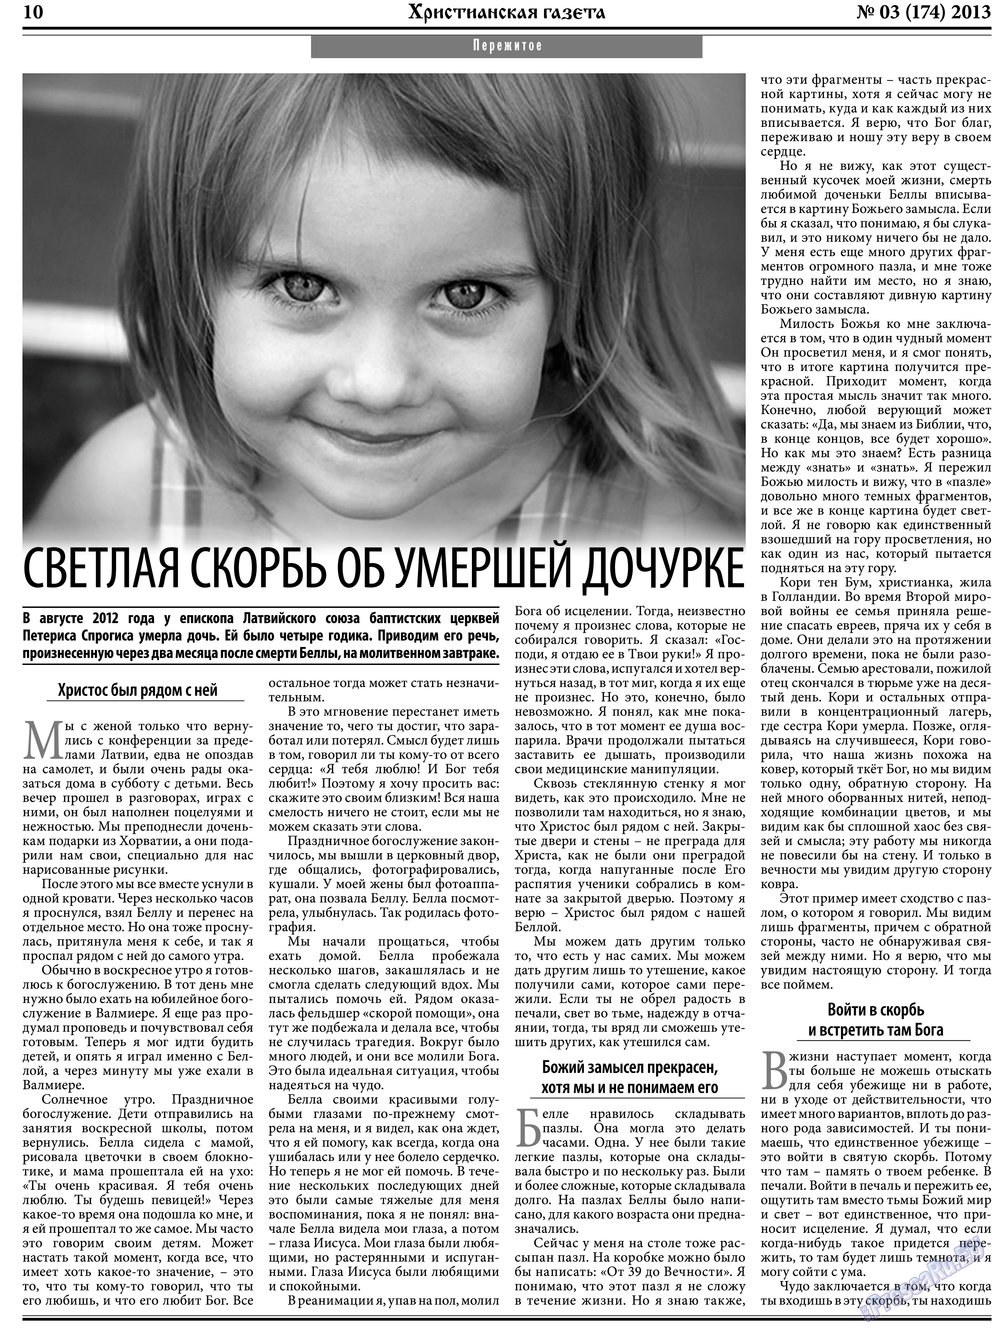 Христианская газета, газета. 2013 №3 стр.10